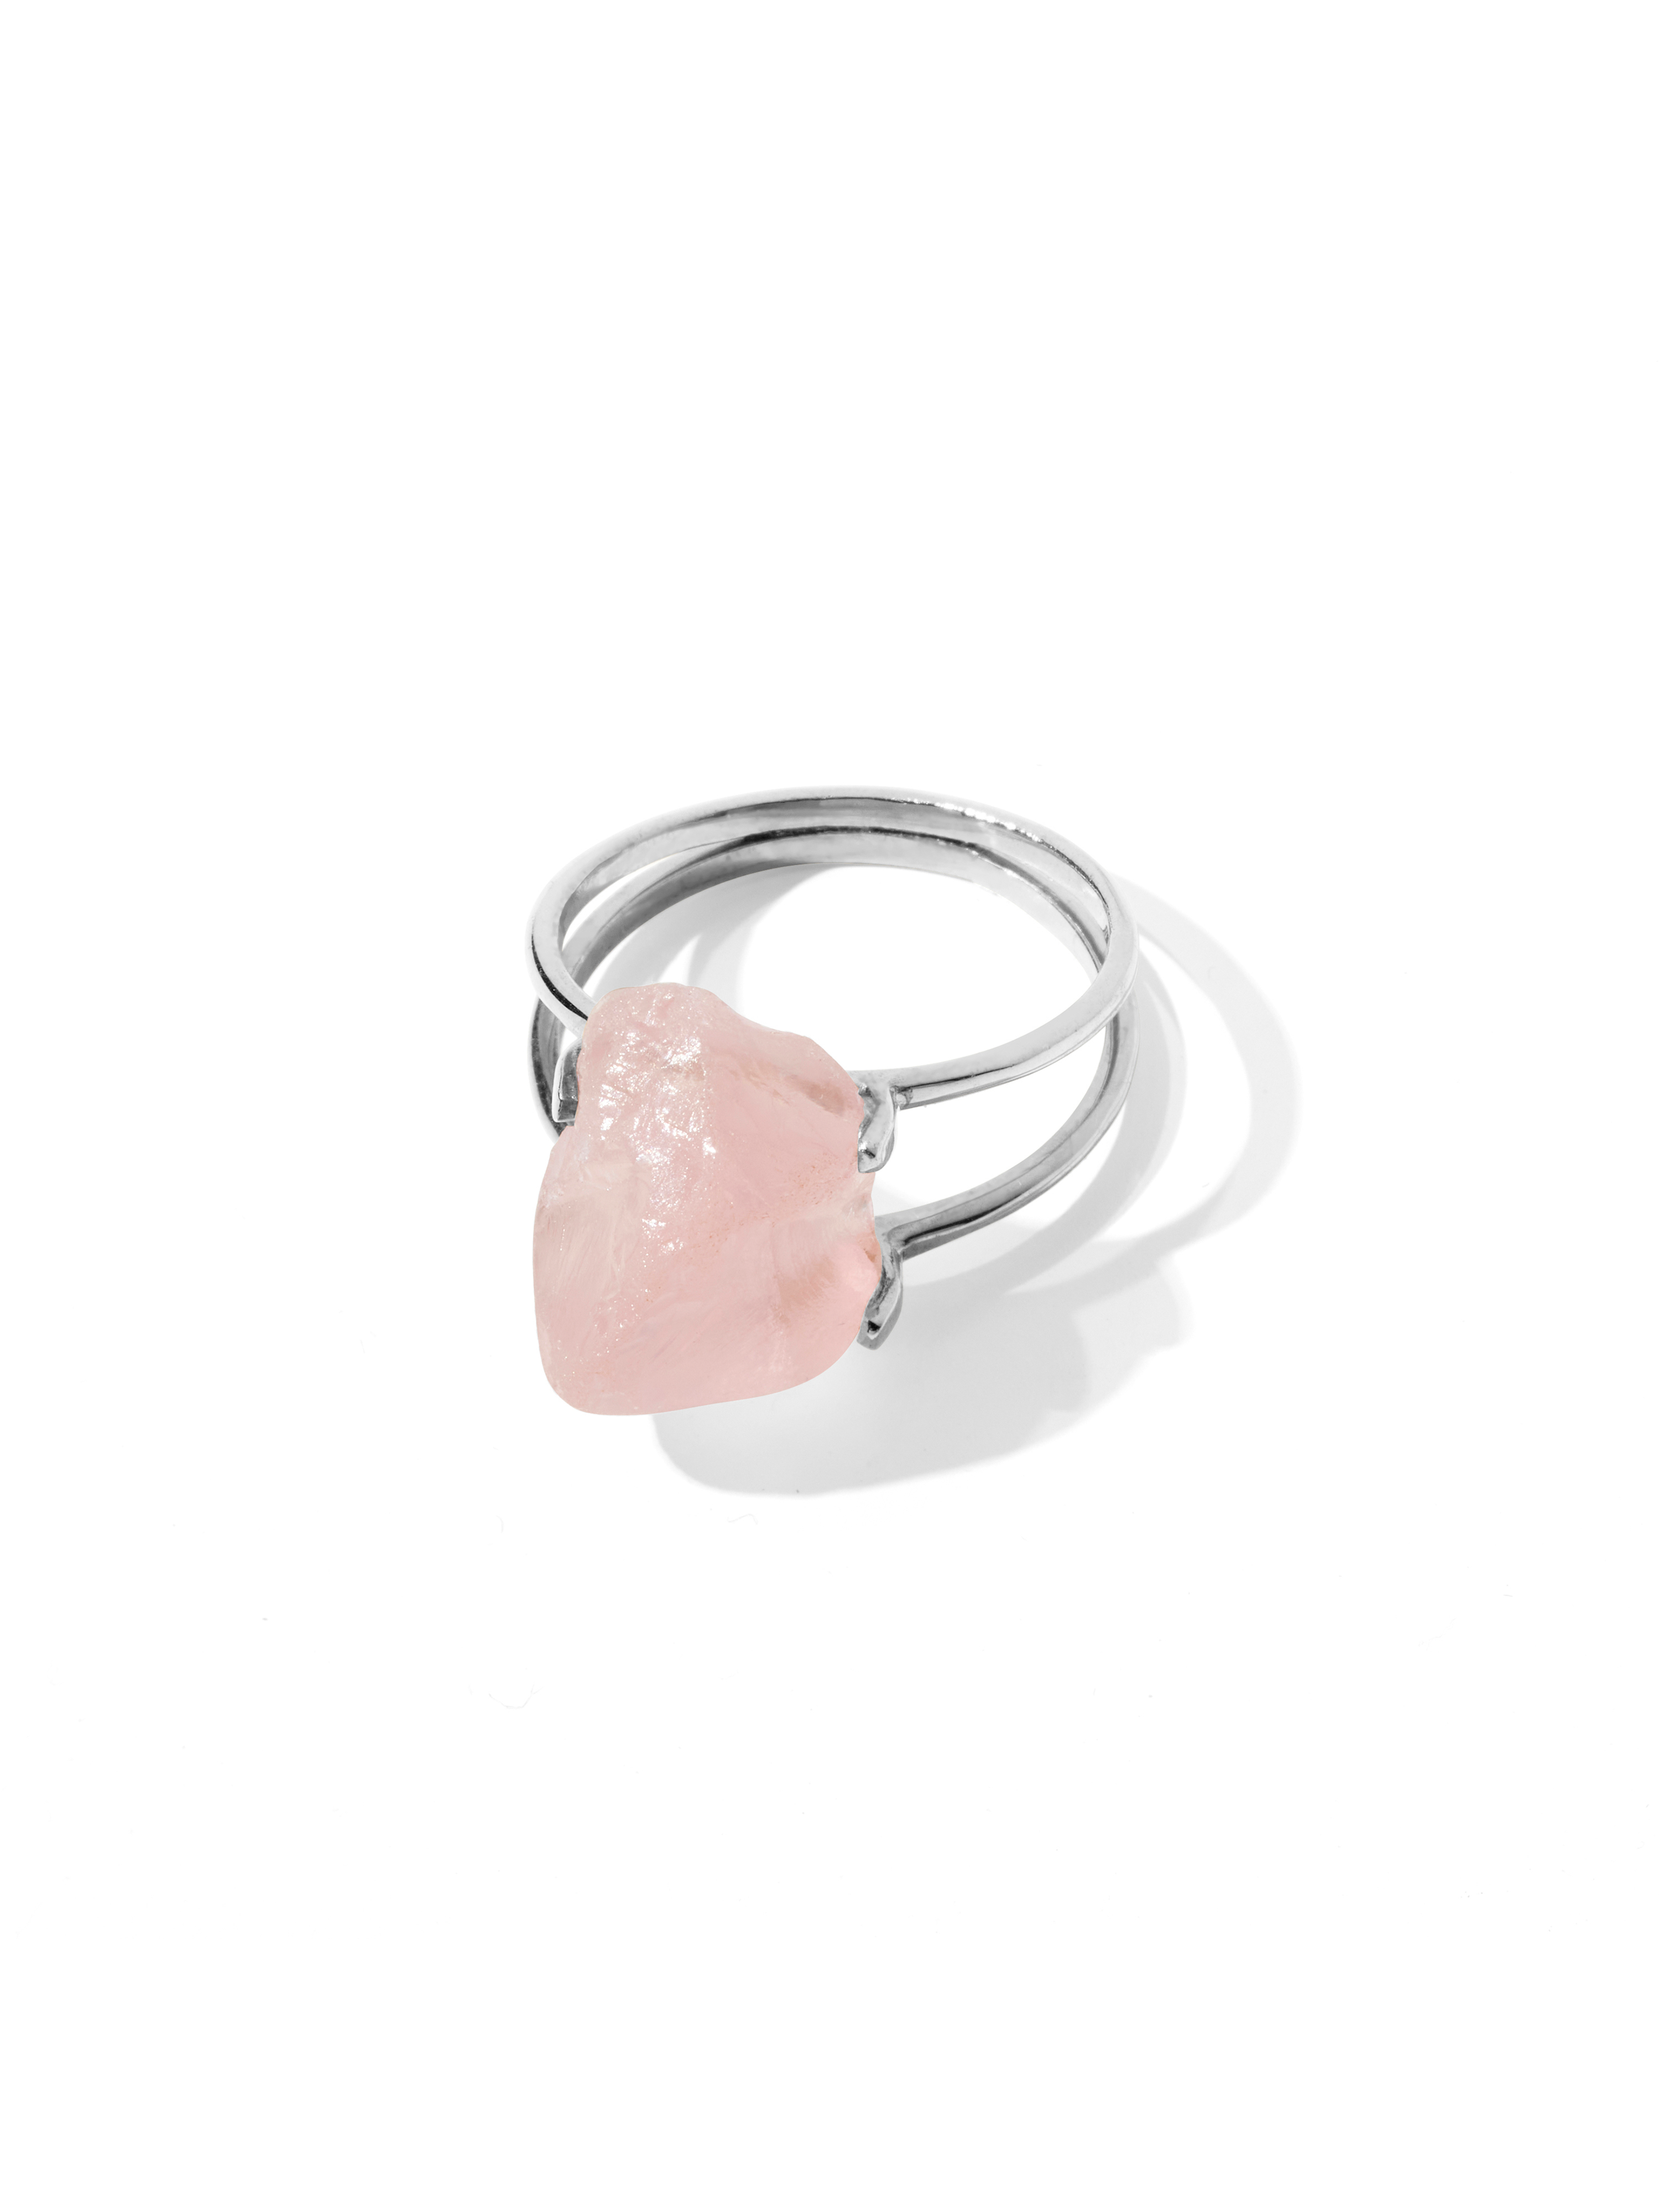 azalea ring | rose quartz